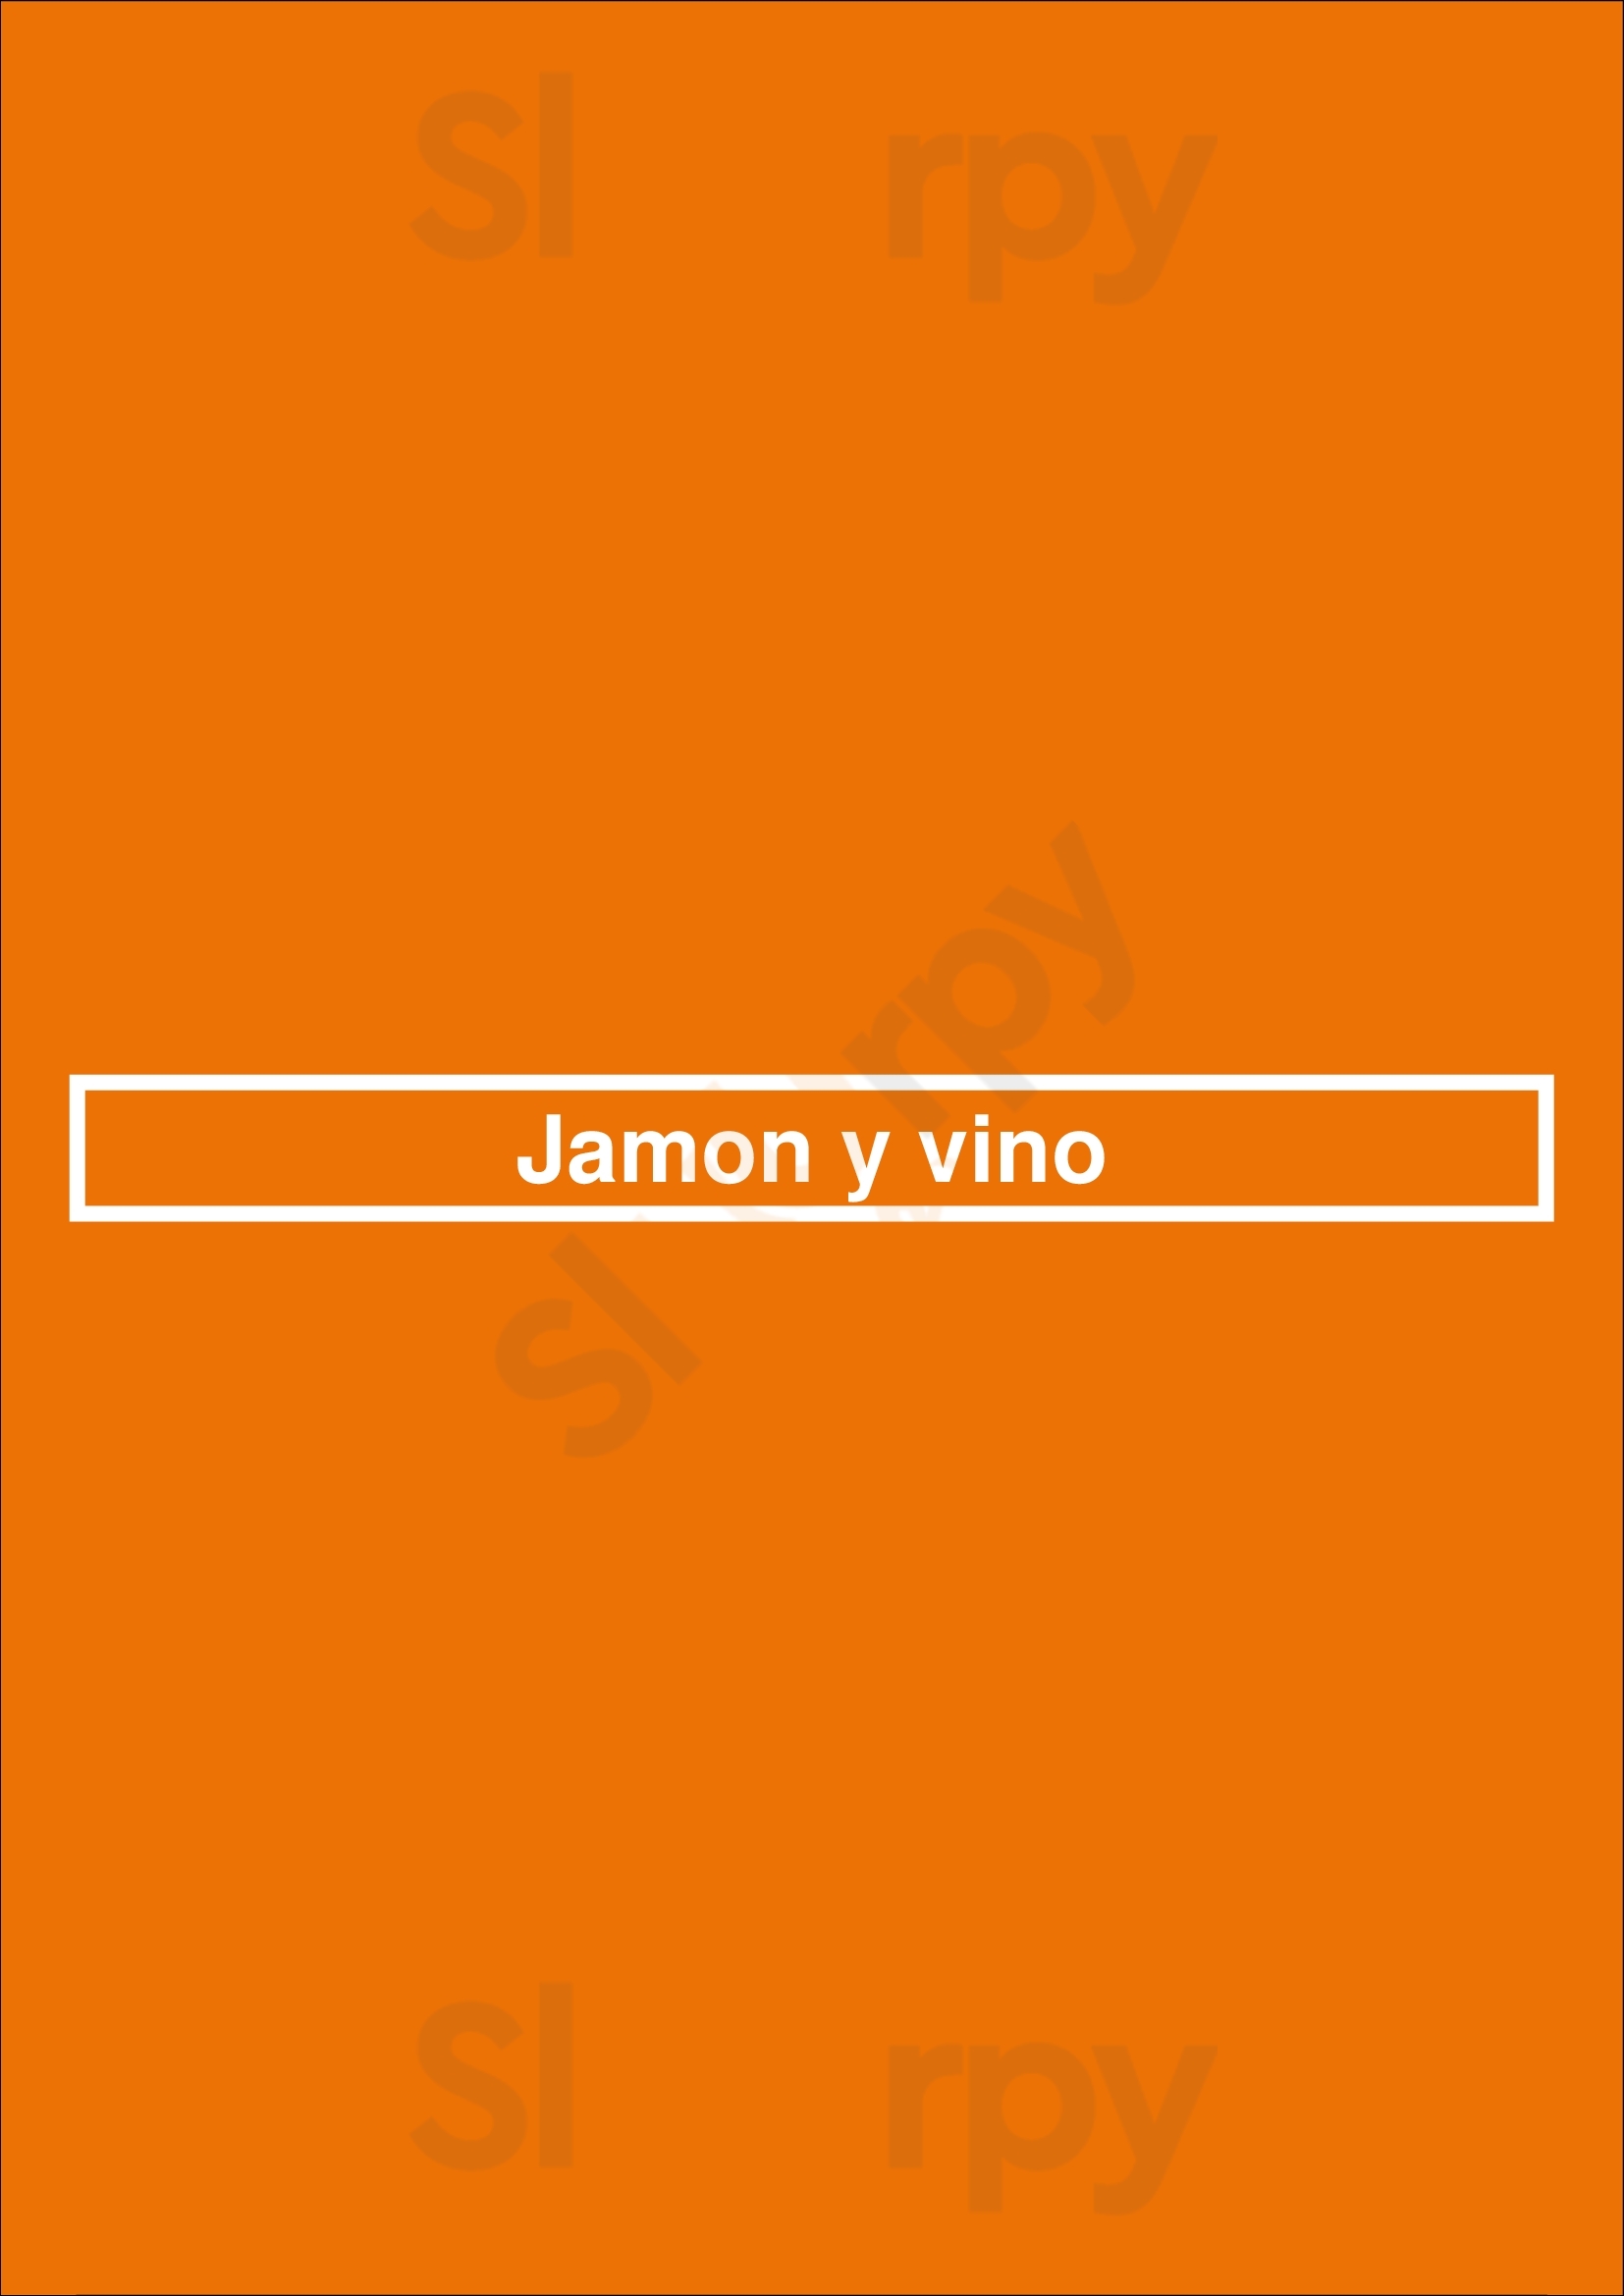 Jamon Y Vino Barcelona Menu - 1